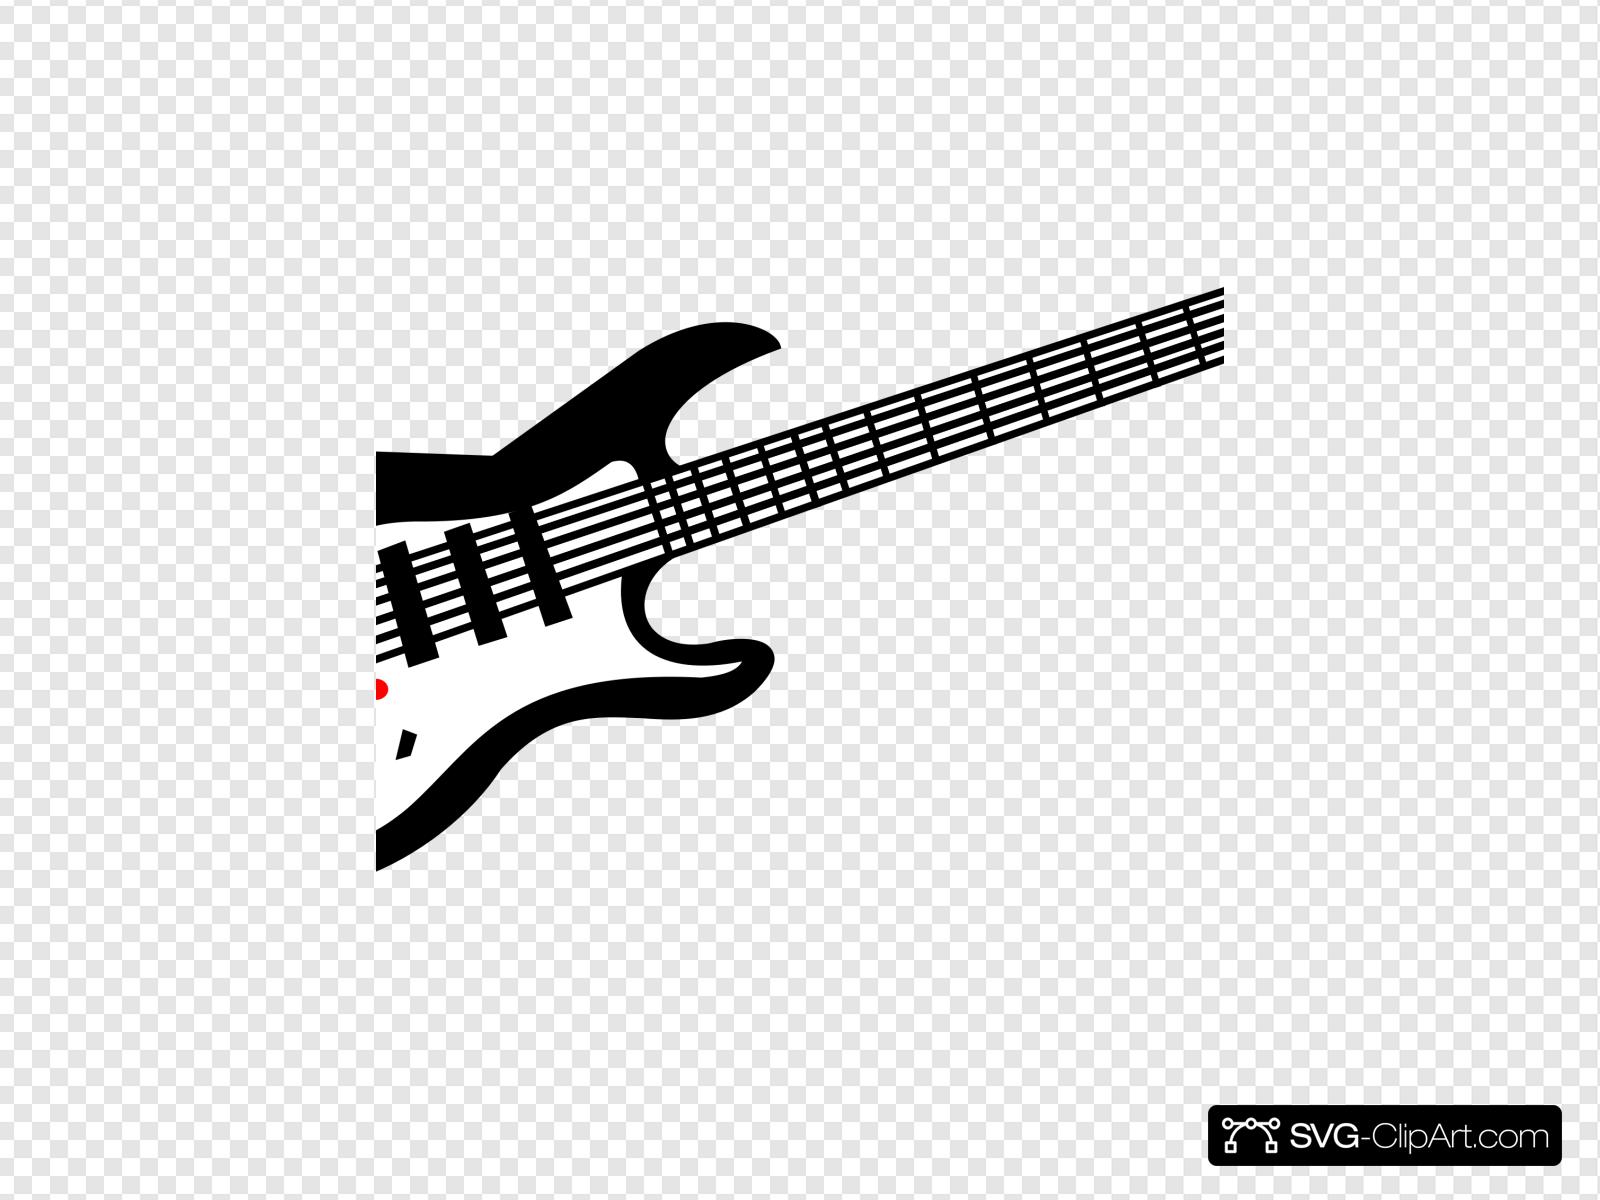 guitar clipart symbol